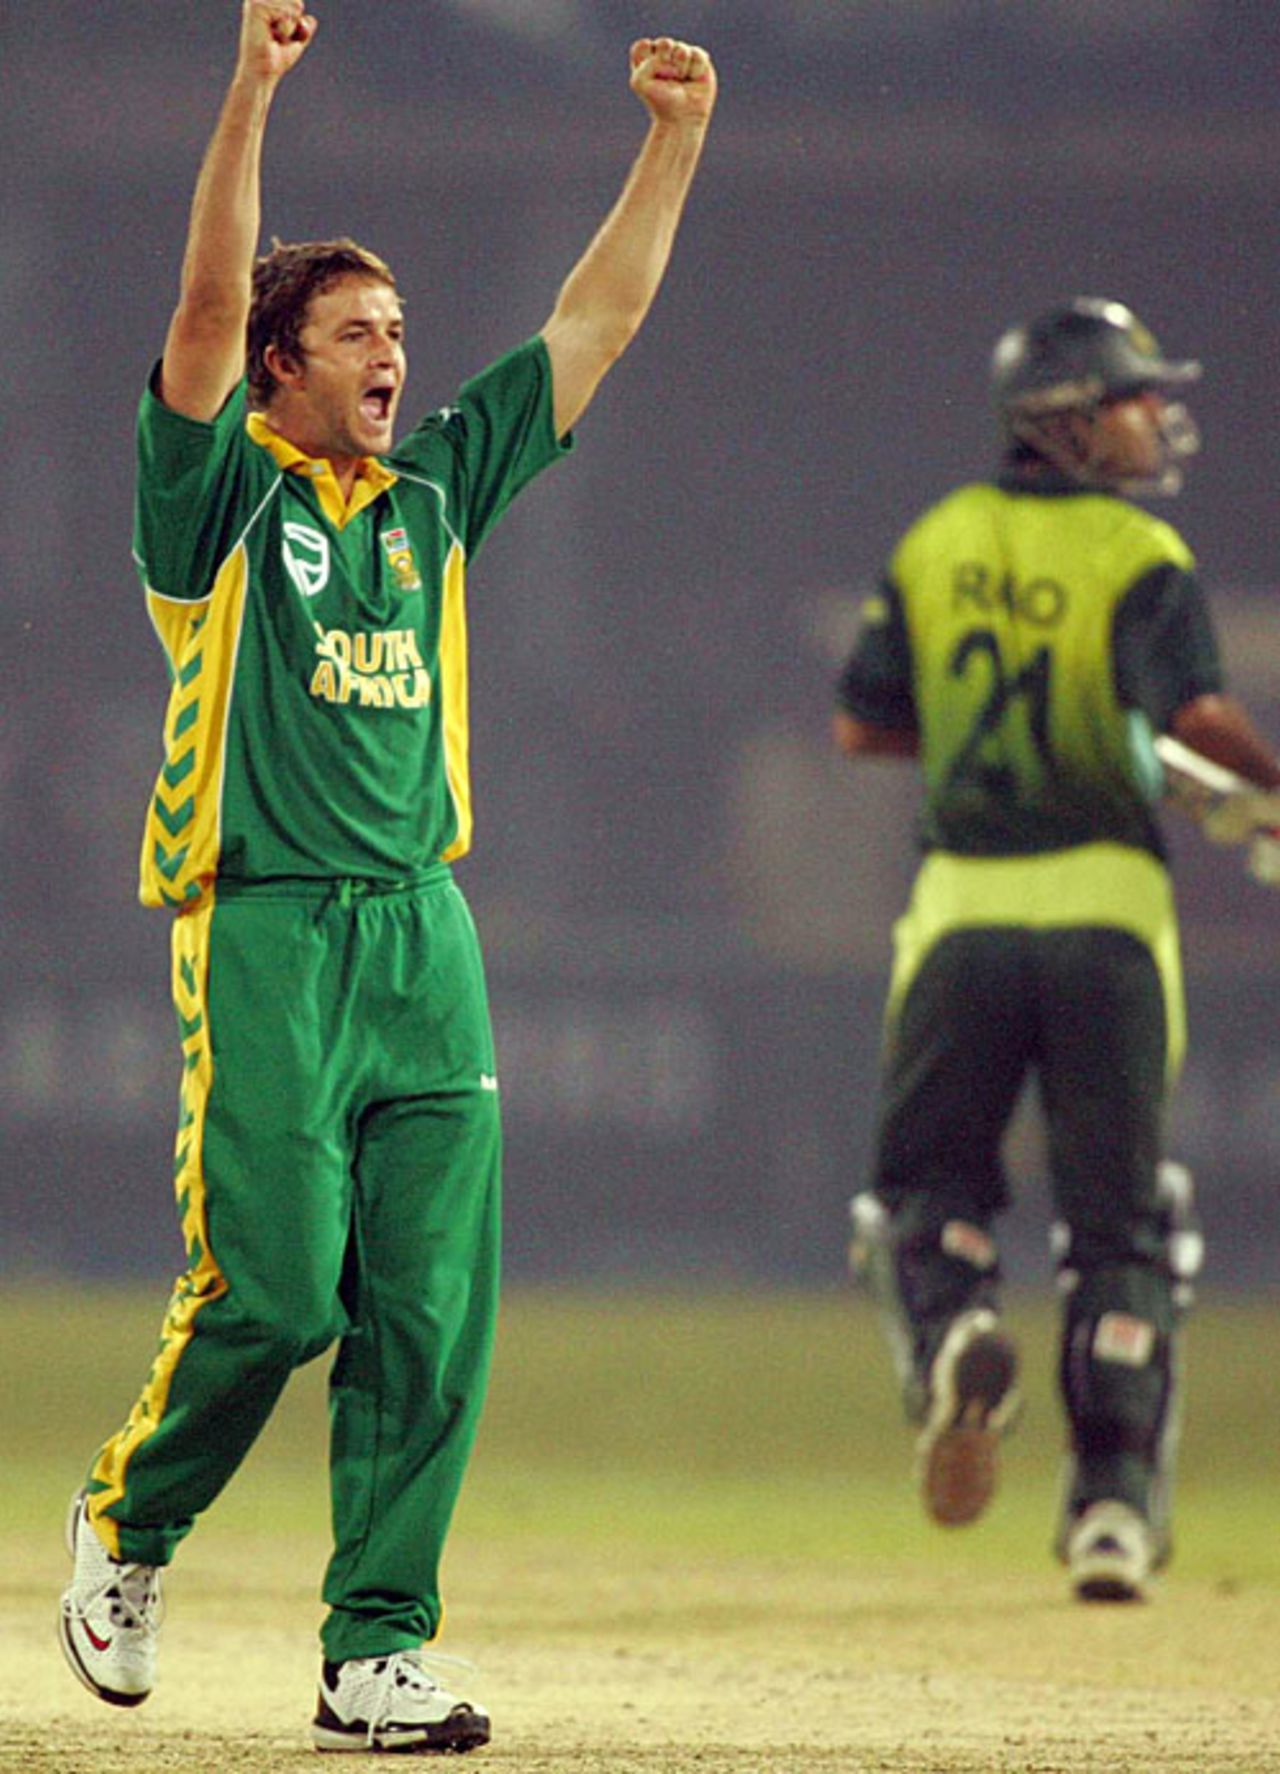 Albie Morkel celebrates after dismissing Shahid Afridi, Pakistan v South Africa, 1st ODI, Lahore, October 18, 2007